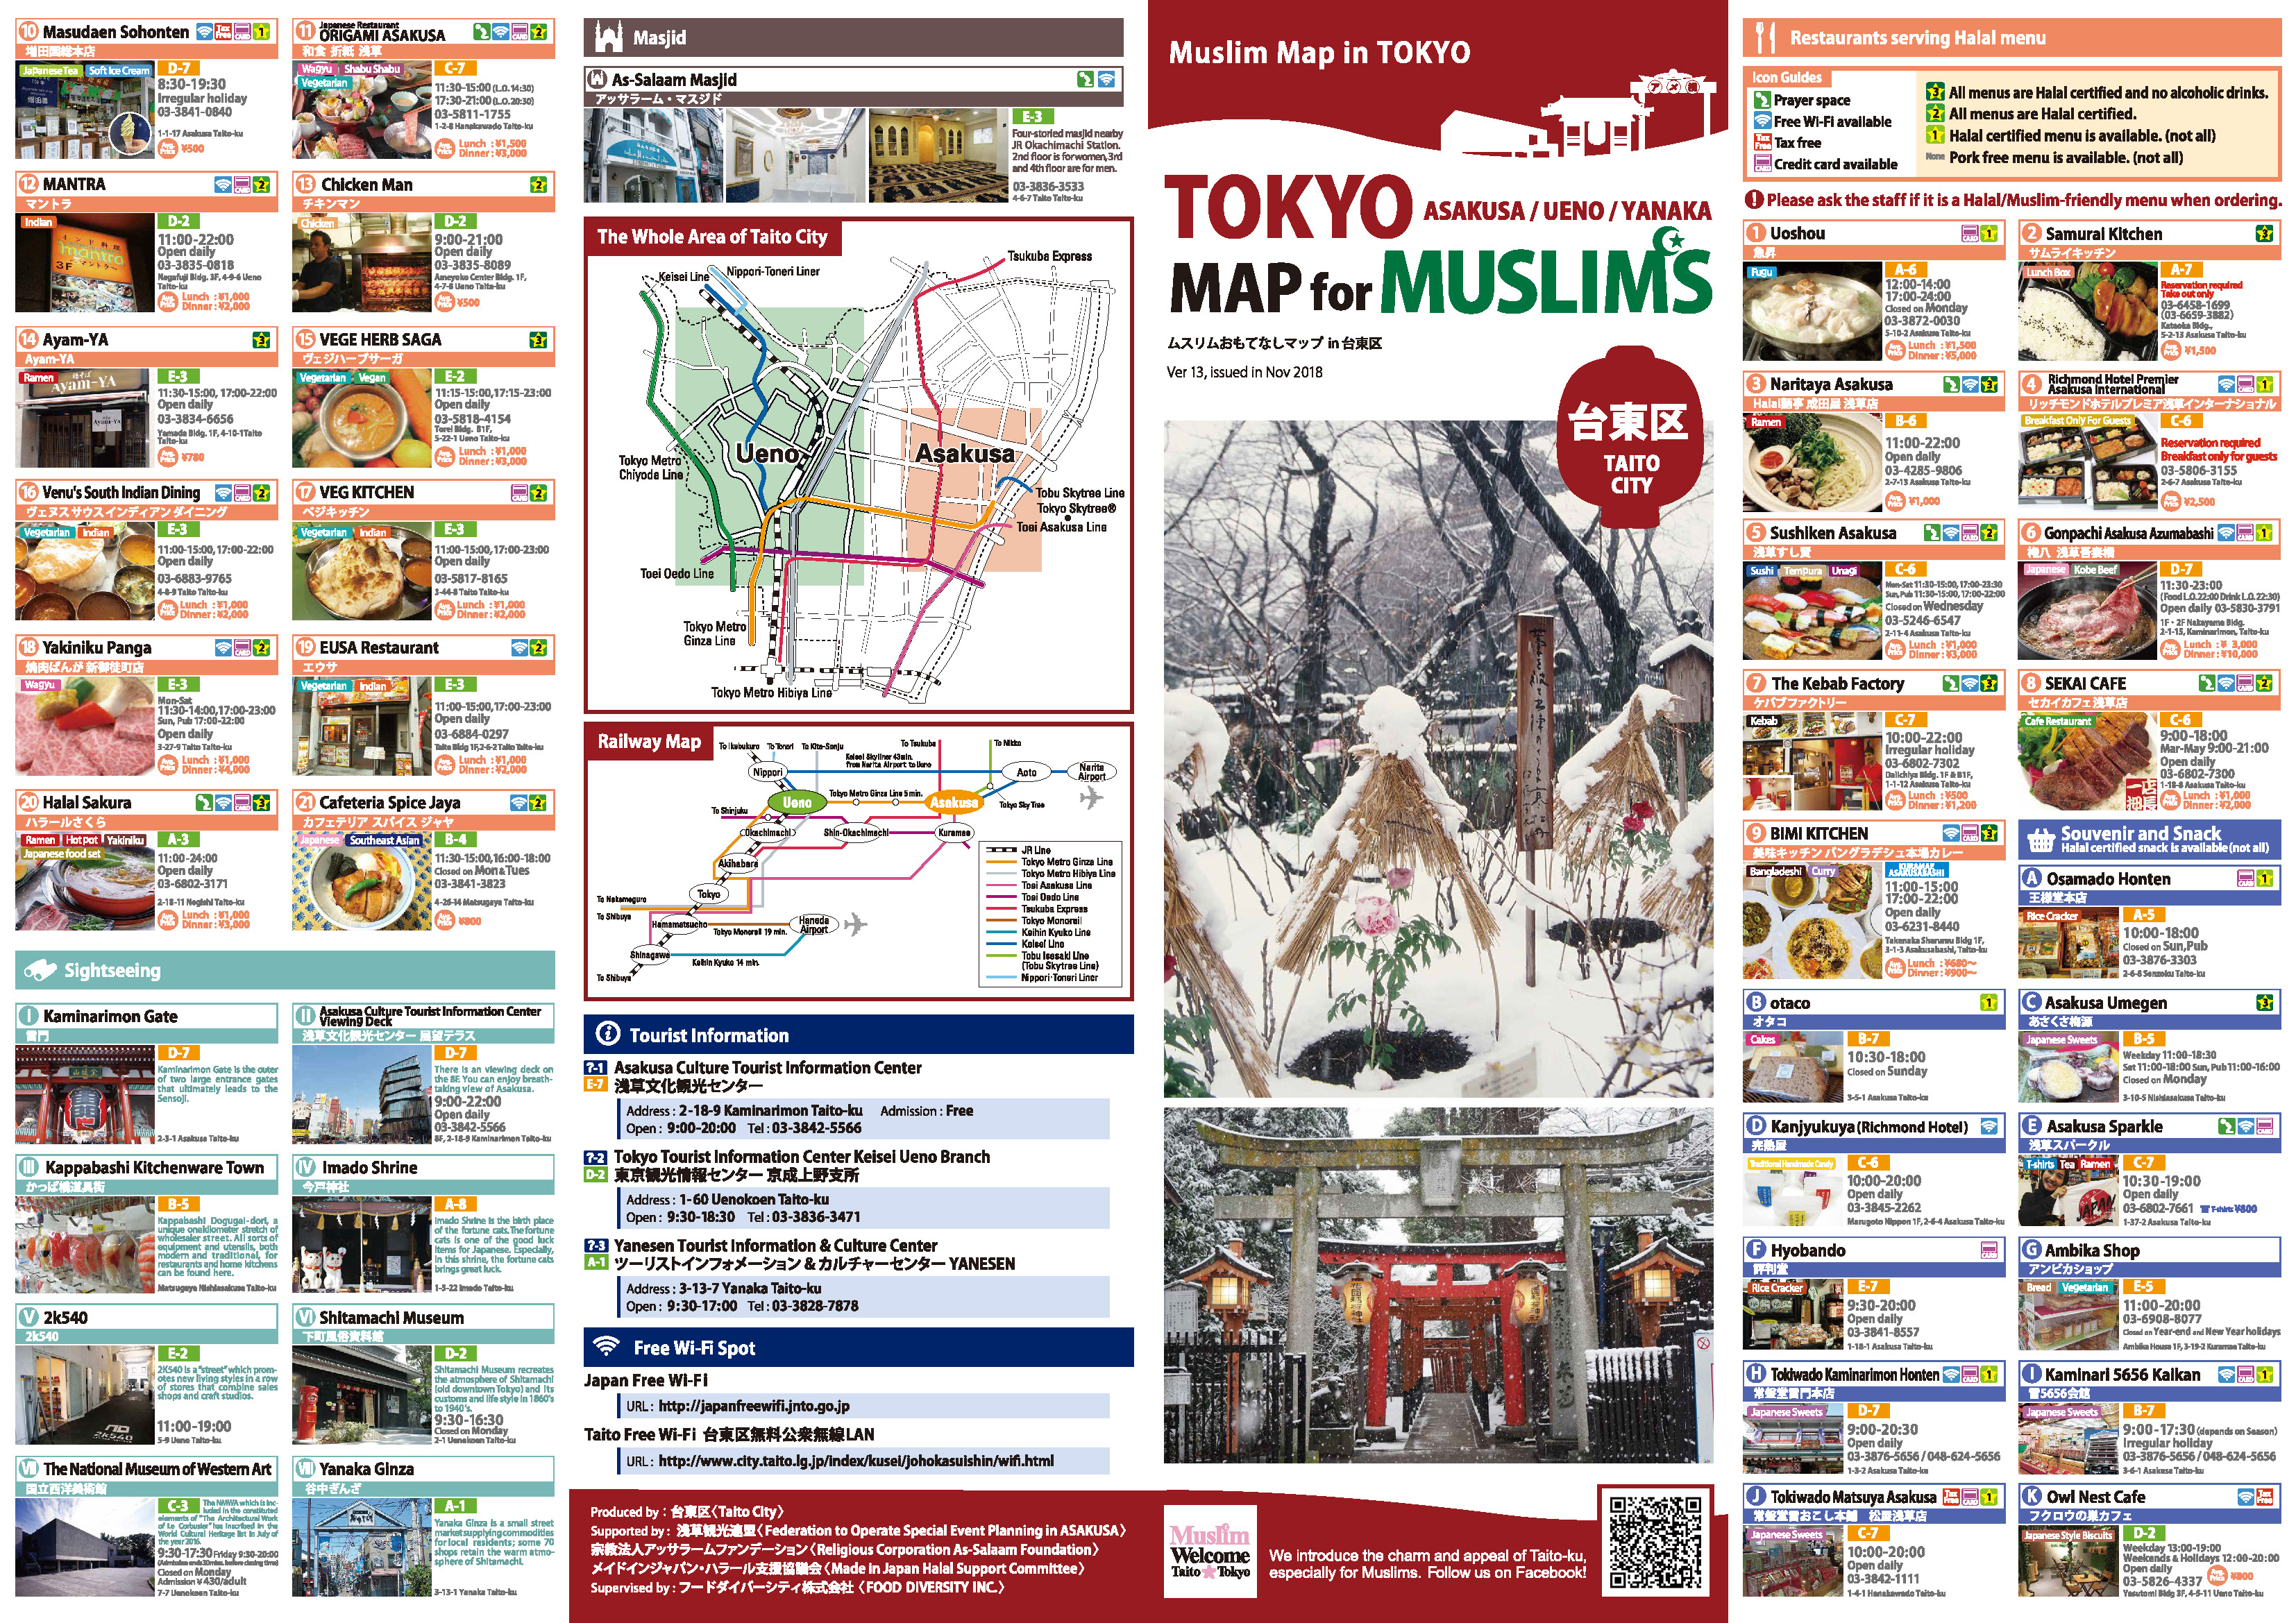 Последняя версия «Карты Токио для мусульман» также доступна онлайн (см. ссылку выше)